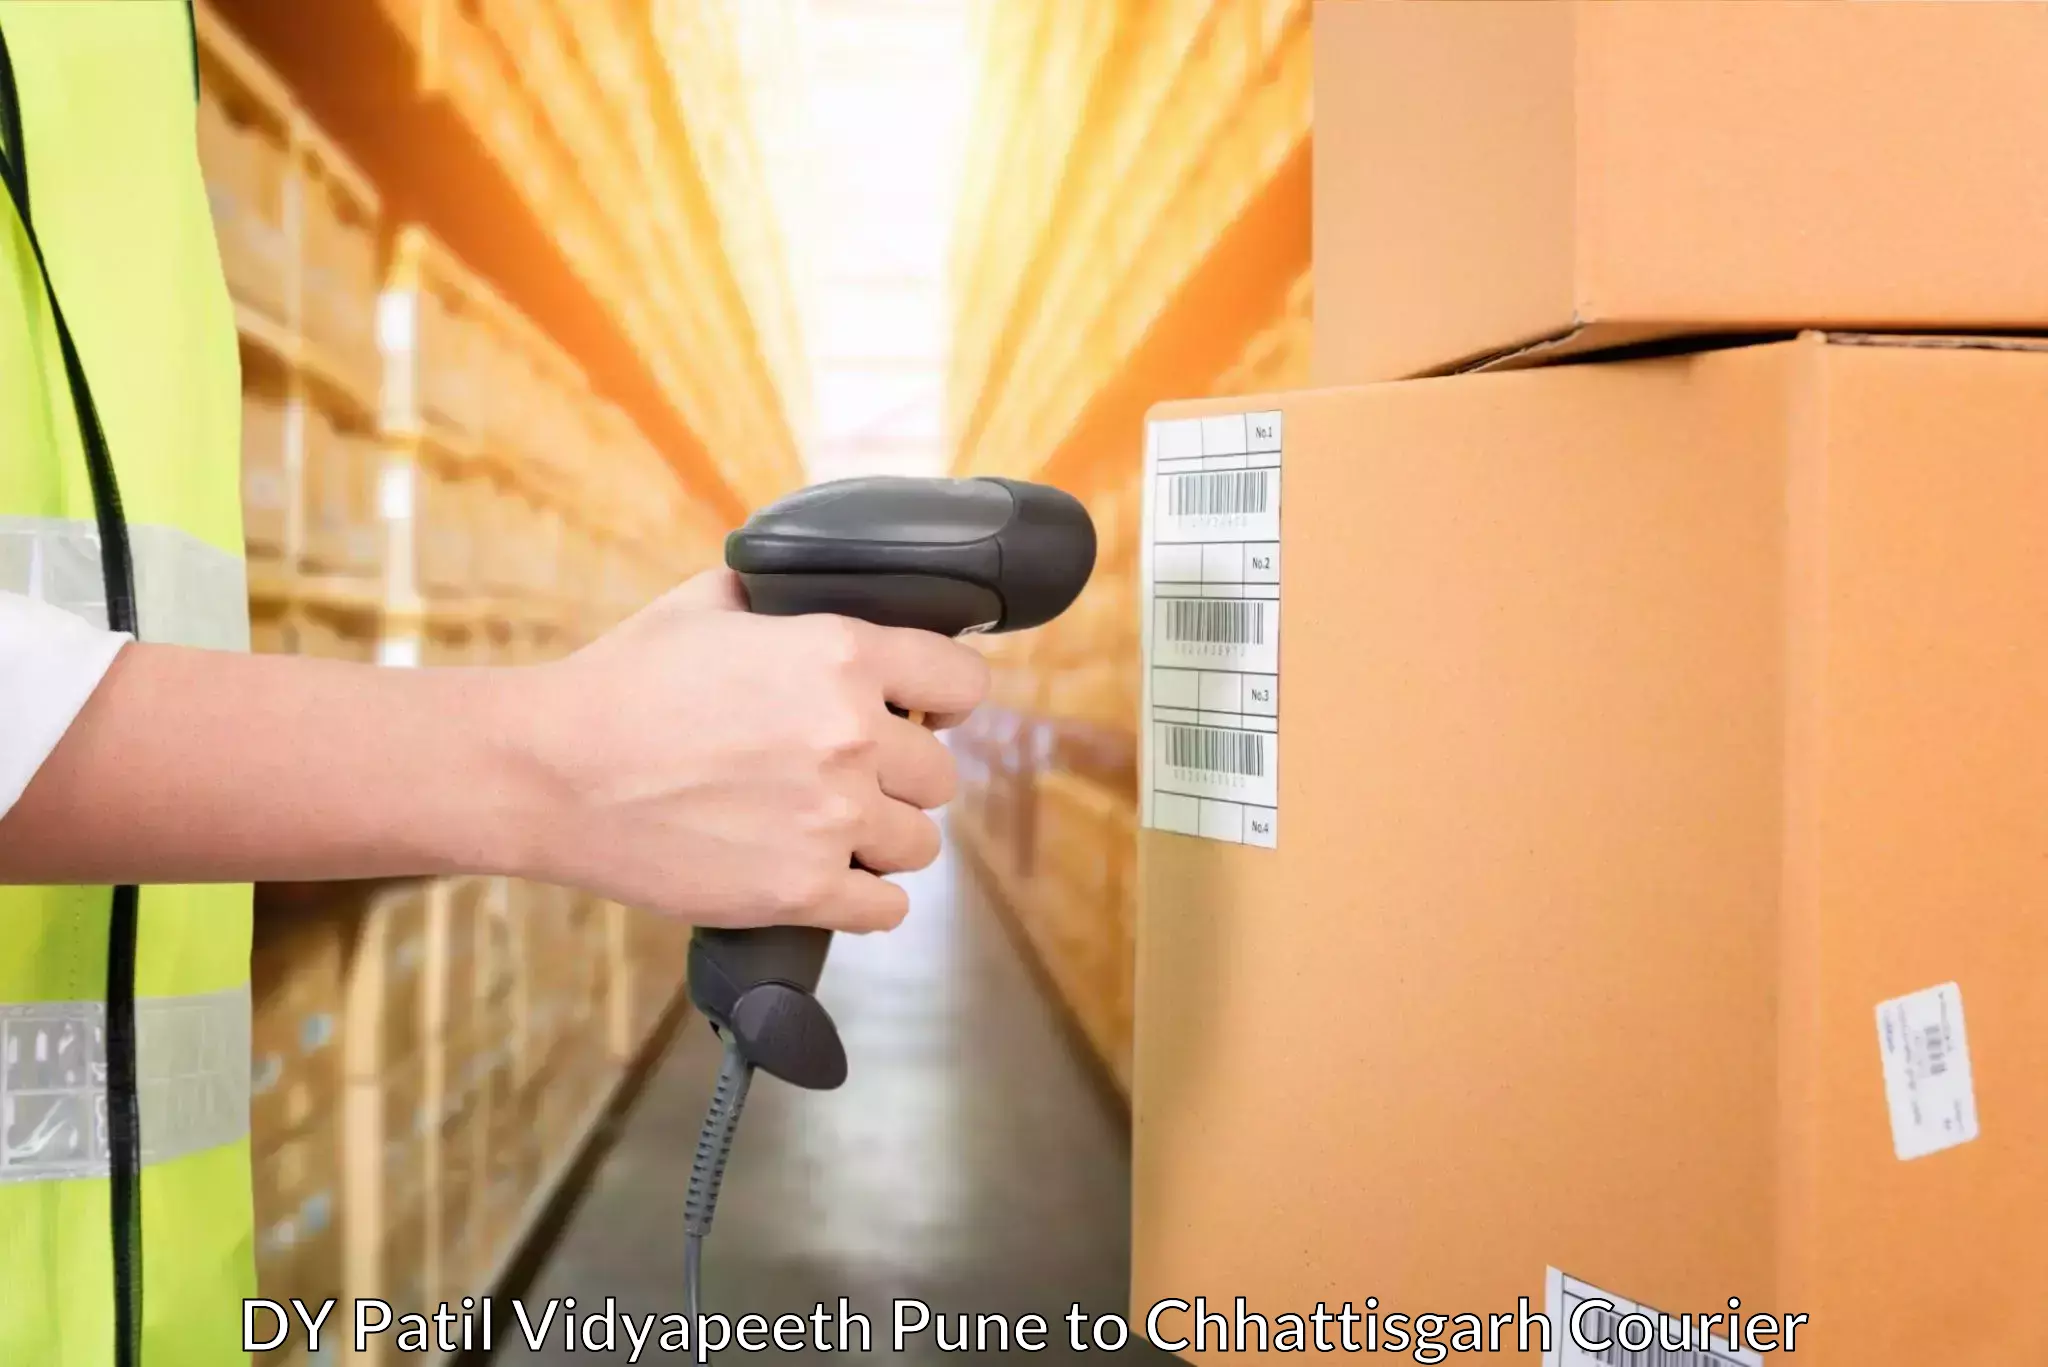 Door-to-door freight service DY Patil Vidyapeeth Pune to Berla